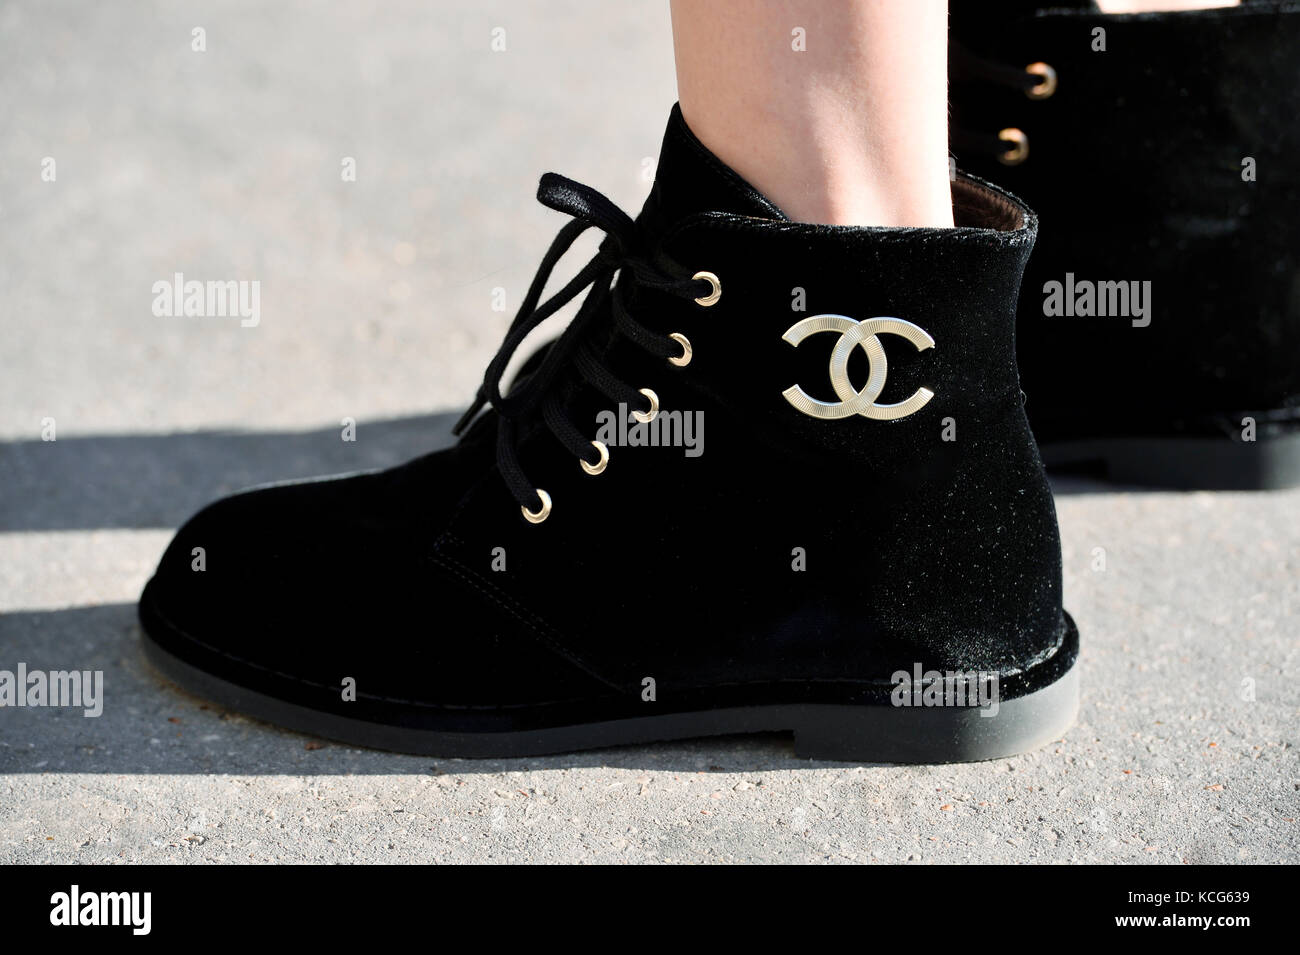 Street Style Chanel - Paris Fashion Week RTW-SS 2018 Stockfotografie - Alamy